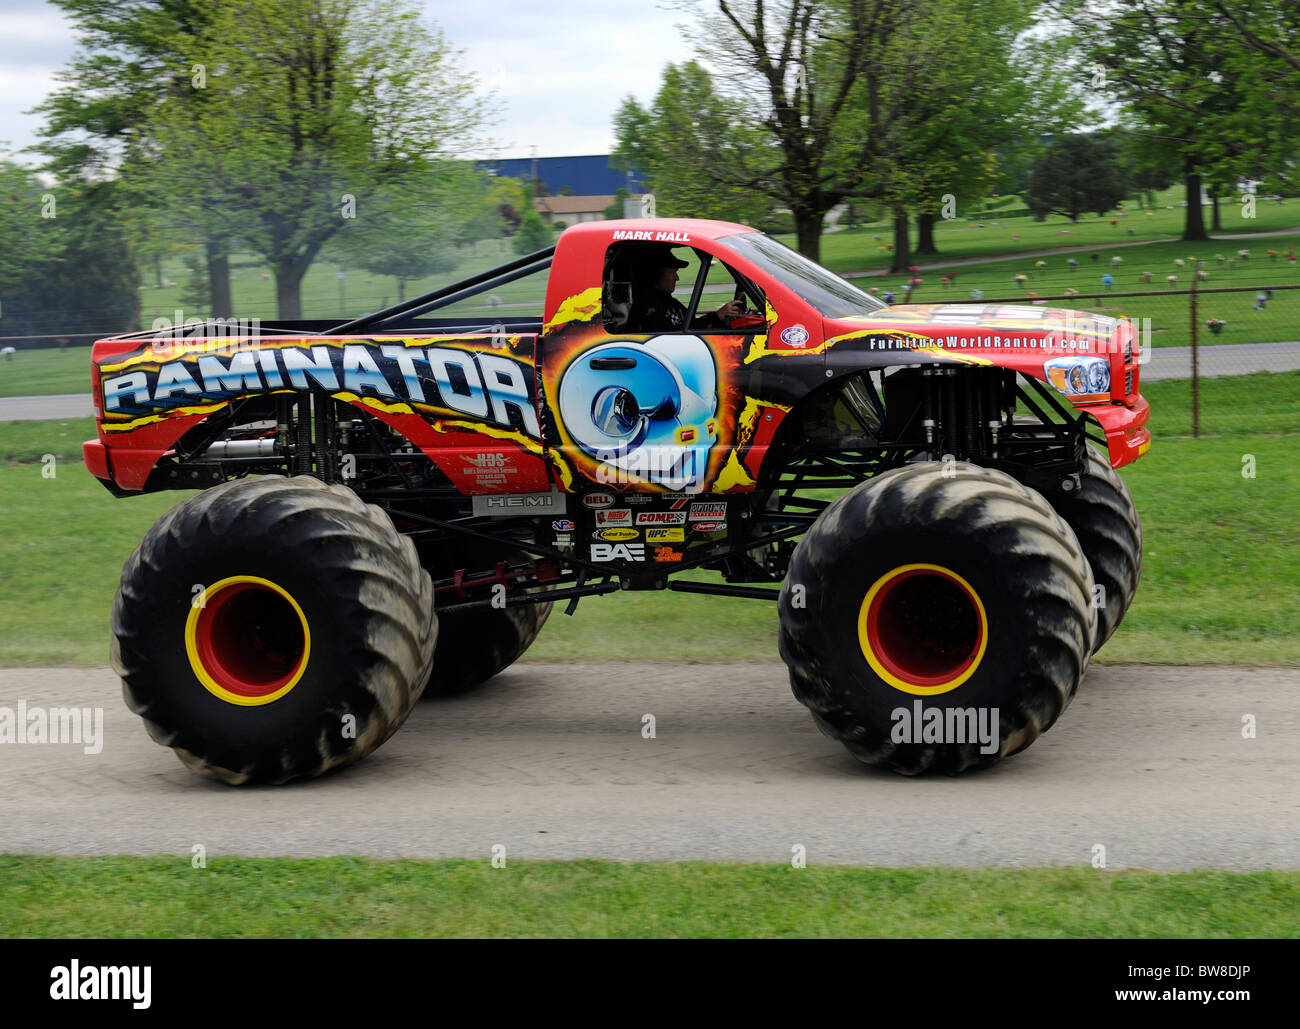 Raminator Monster Truck sur moyen de concours freestyle au Jamboree hors route 4x4 Monster Truck Show à Lima, Ohio. Banque D'Images